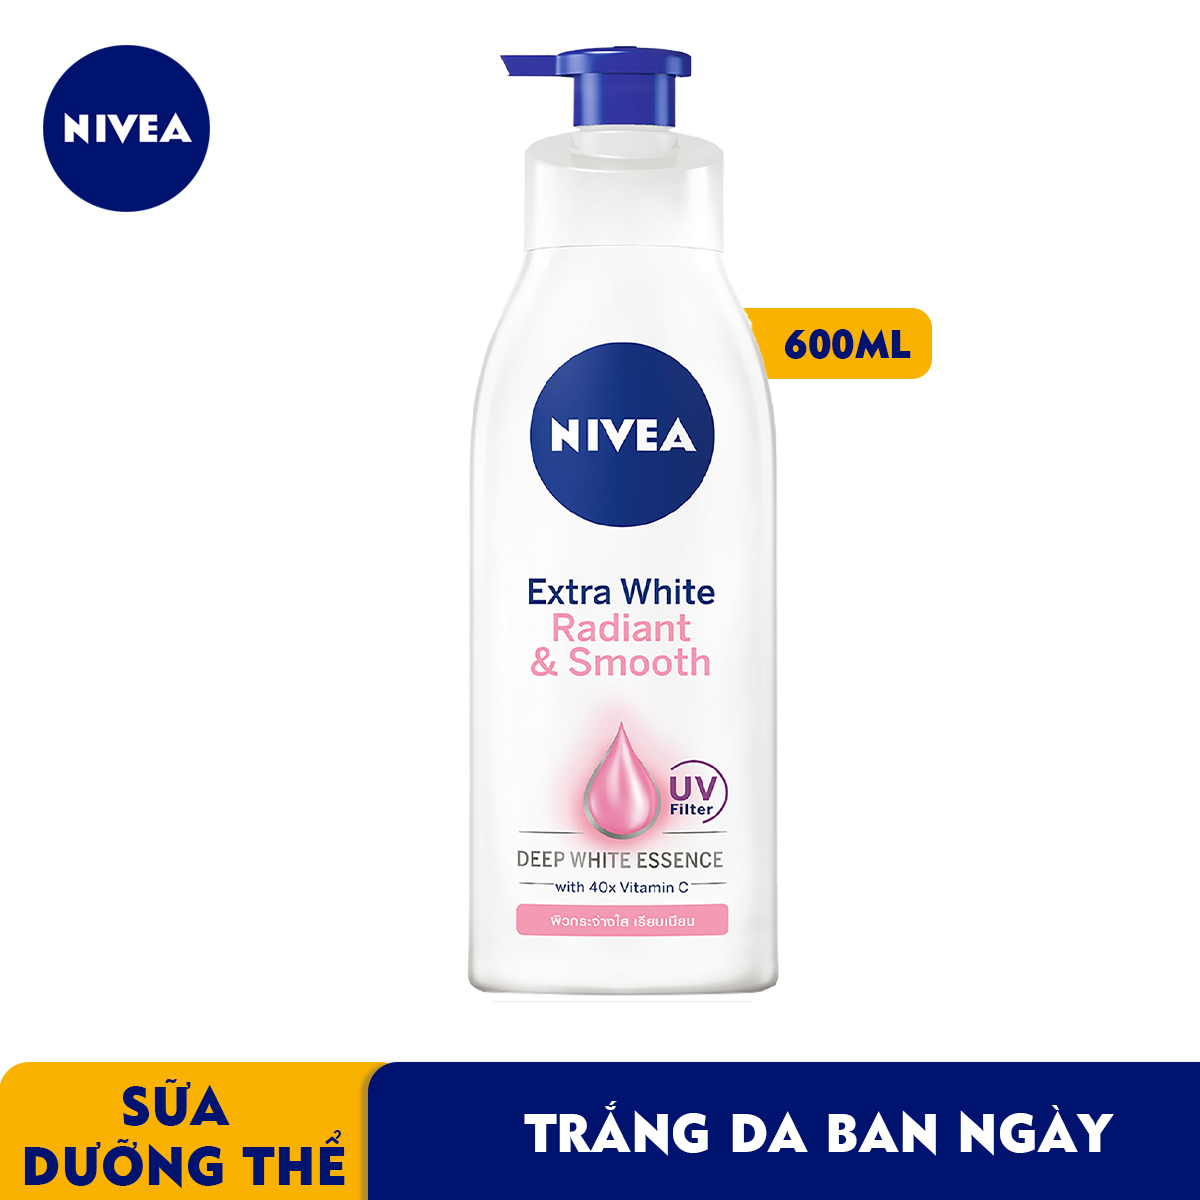 Sữa Dưỡng Thể NIVEA Mịn Mượt | Sáng Da Ban Ngày (600 Ml) - 83861